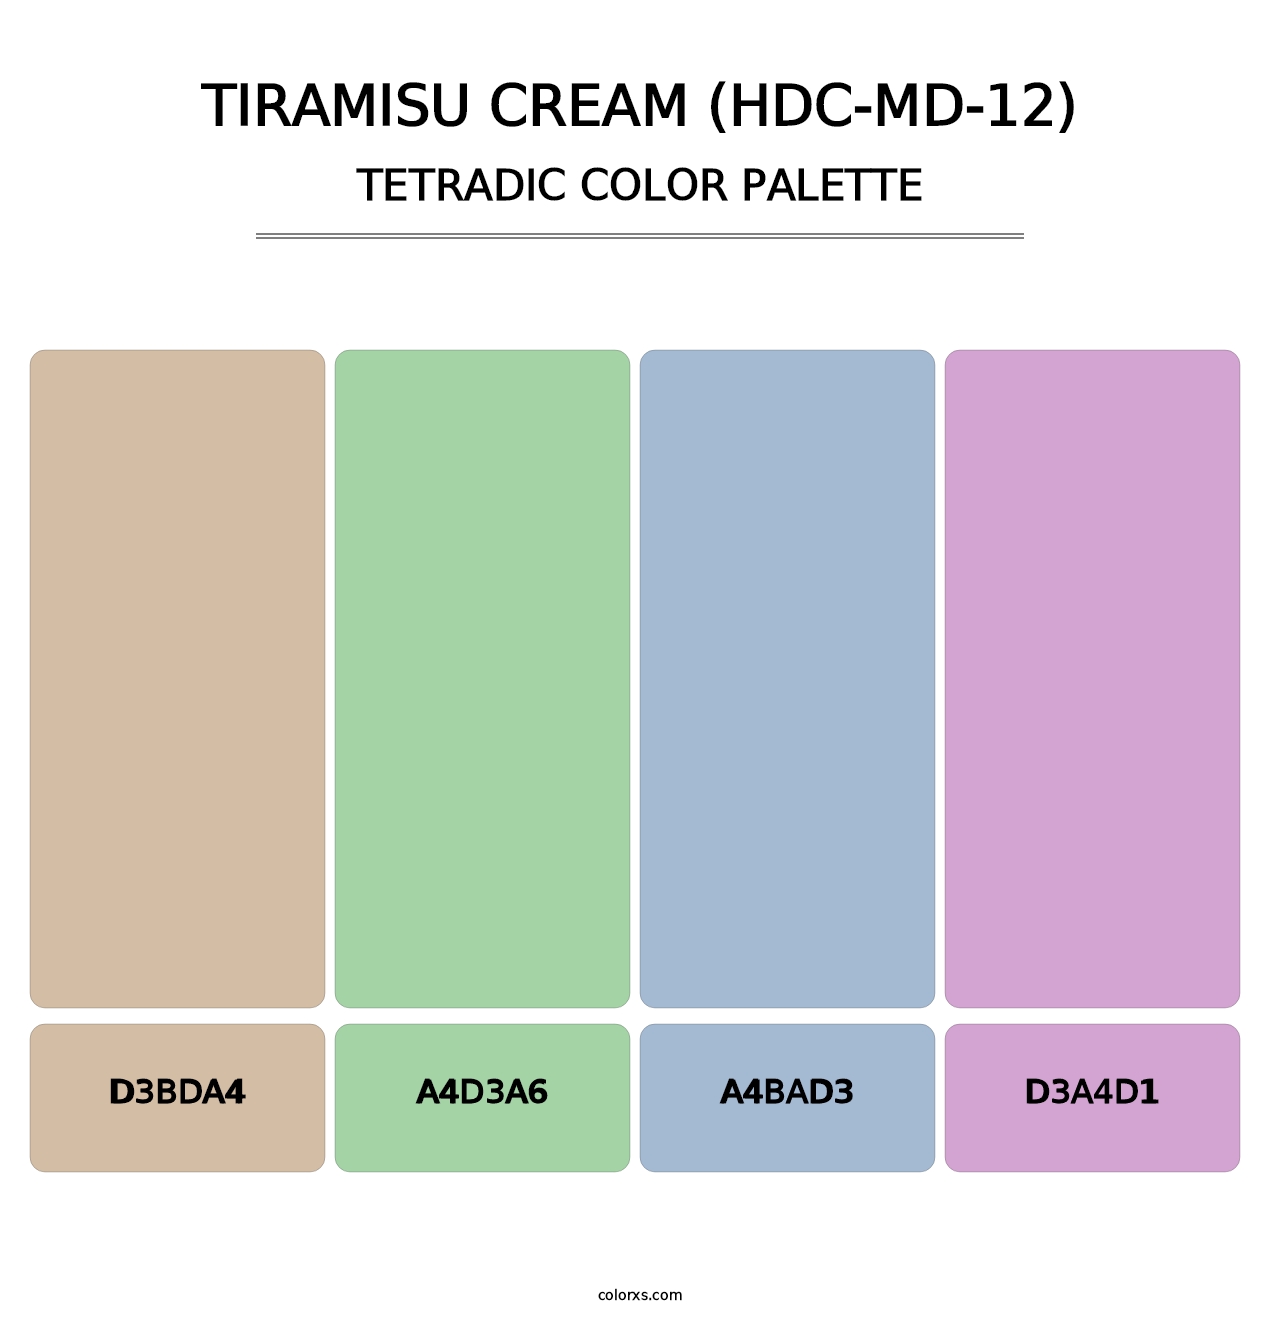 Tiramisu Cream (HDC-MD-12) - Tetradic Color Palette